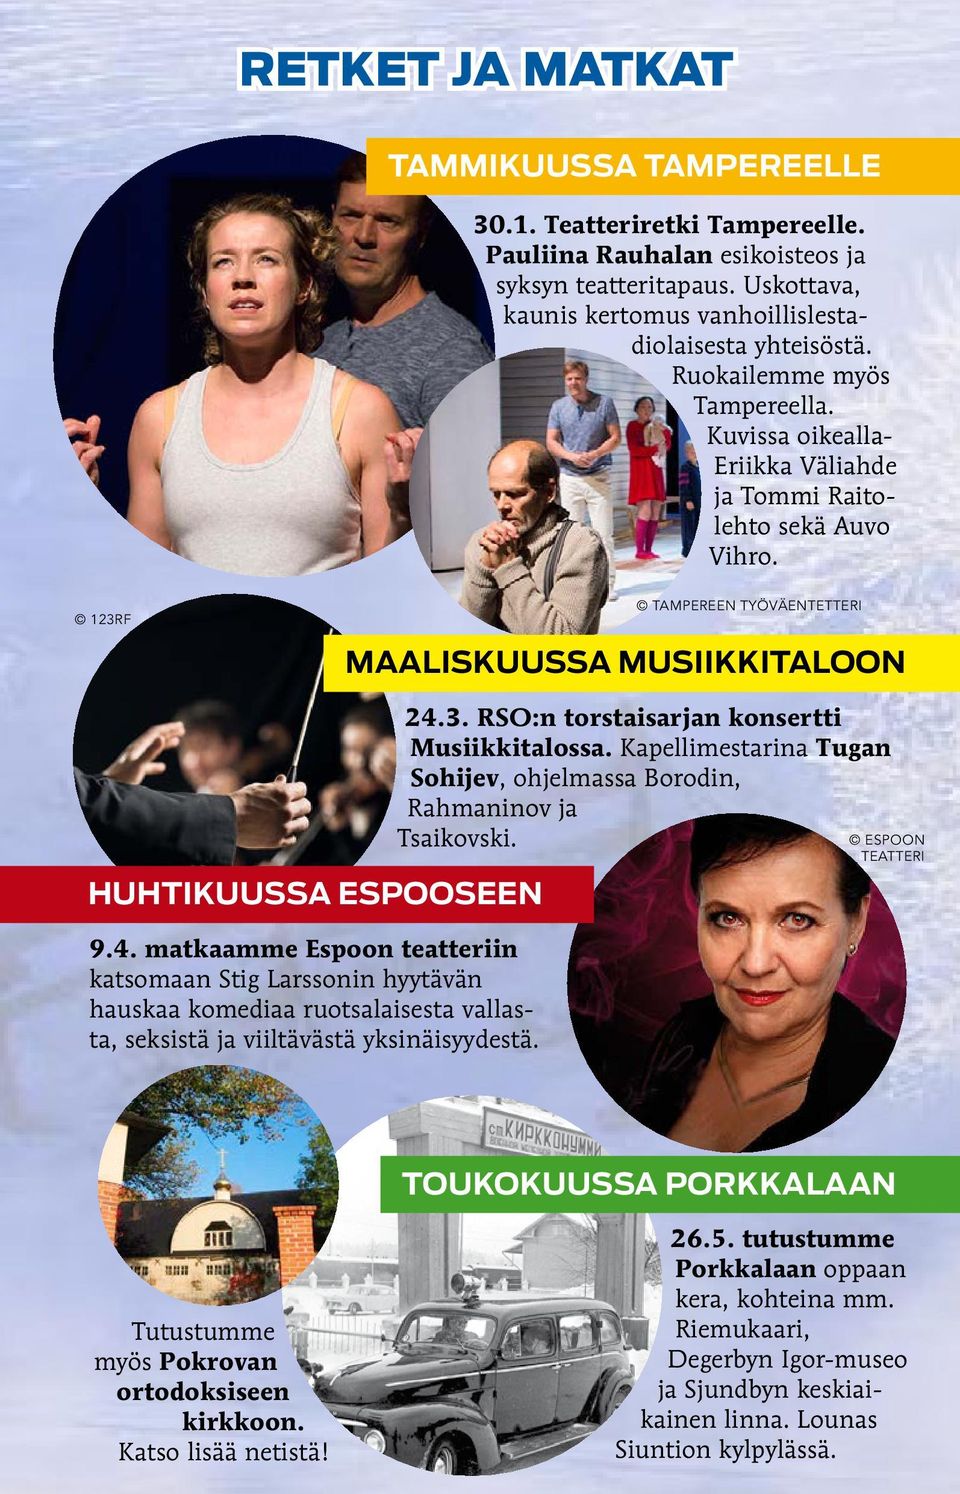 matkaamme Espoon teatteriin katsomaan Stig Larssonin hyytävän hauskaa komediaa ruotsalaisesta vallasta, seksistä ja viiltävästä yksinäisyydestä. 24.3. RSO:n torstaisarjan konsertti Musiikkitalossa.